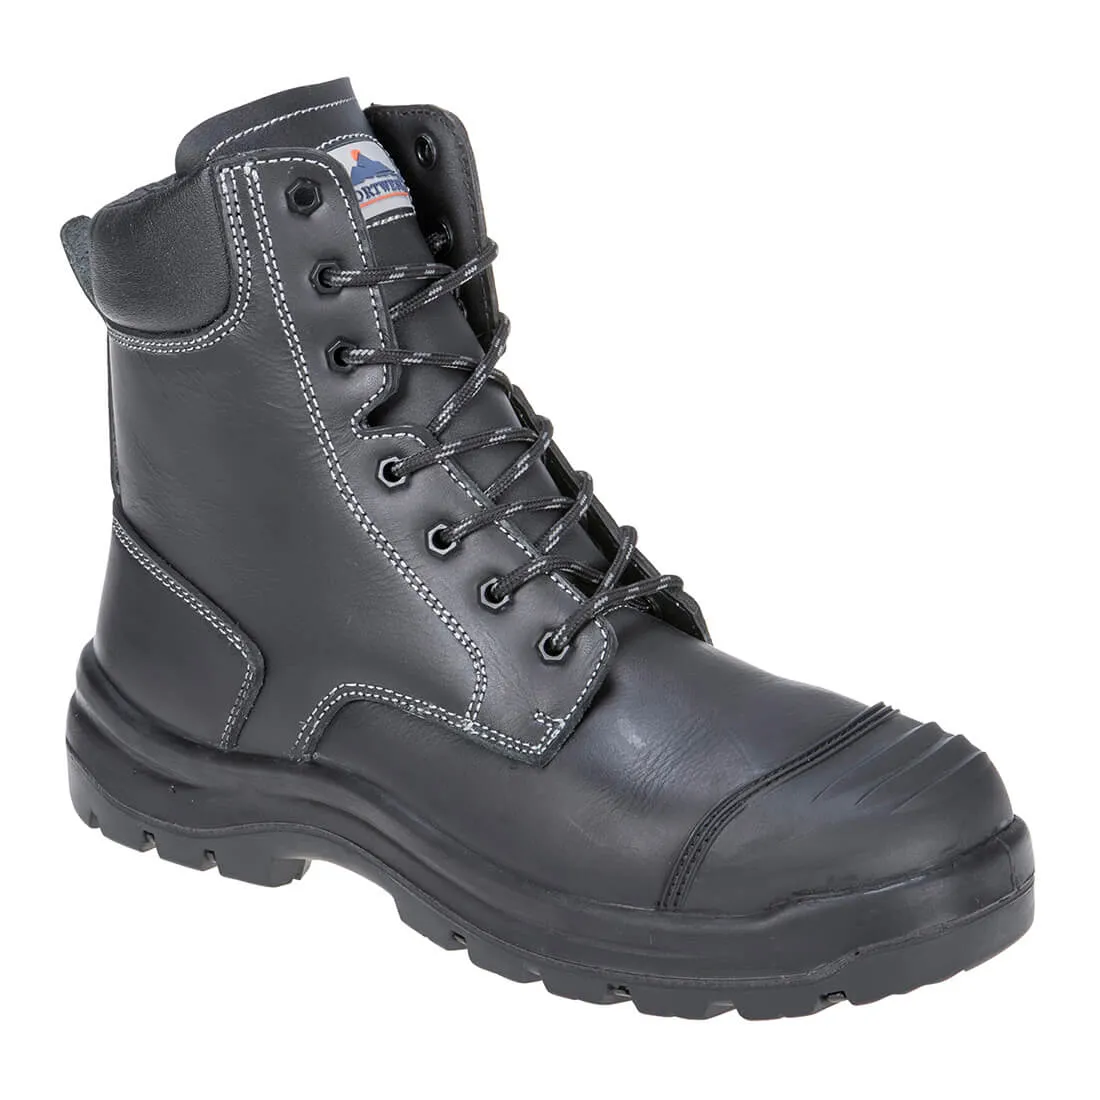 Portwest Pro Mens Eden S3 Safety Boots - Black, Size 9